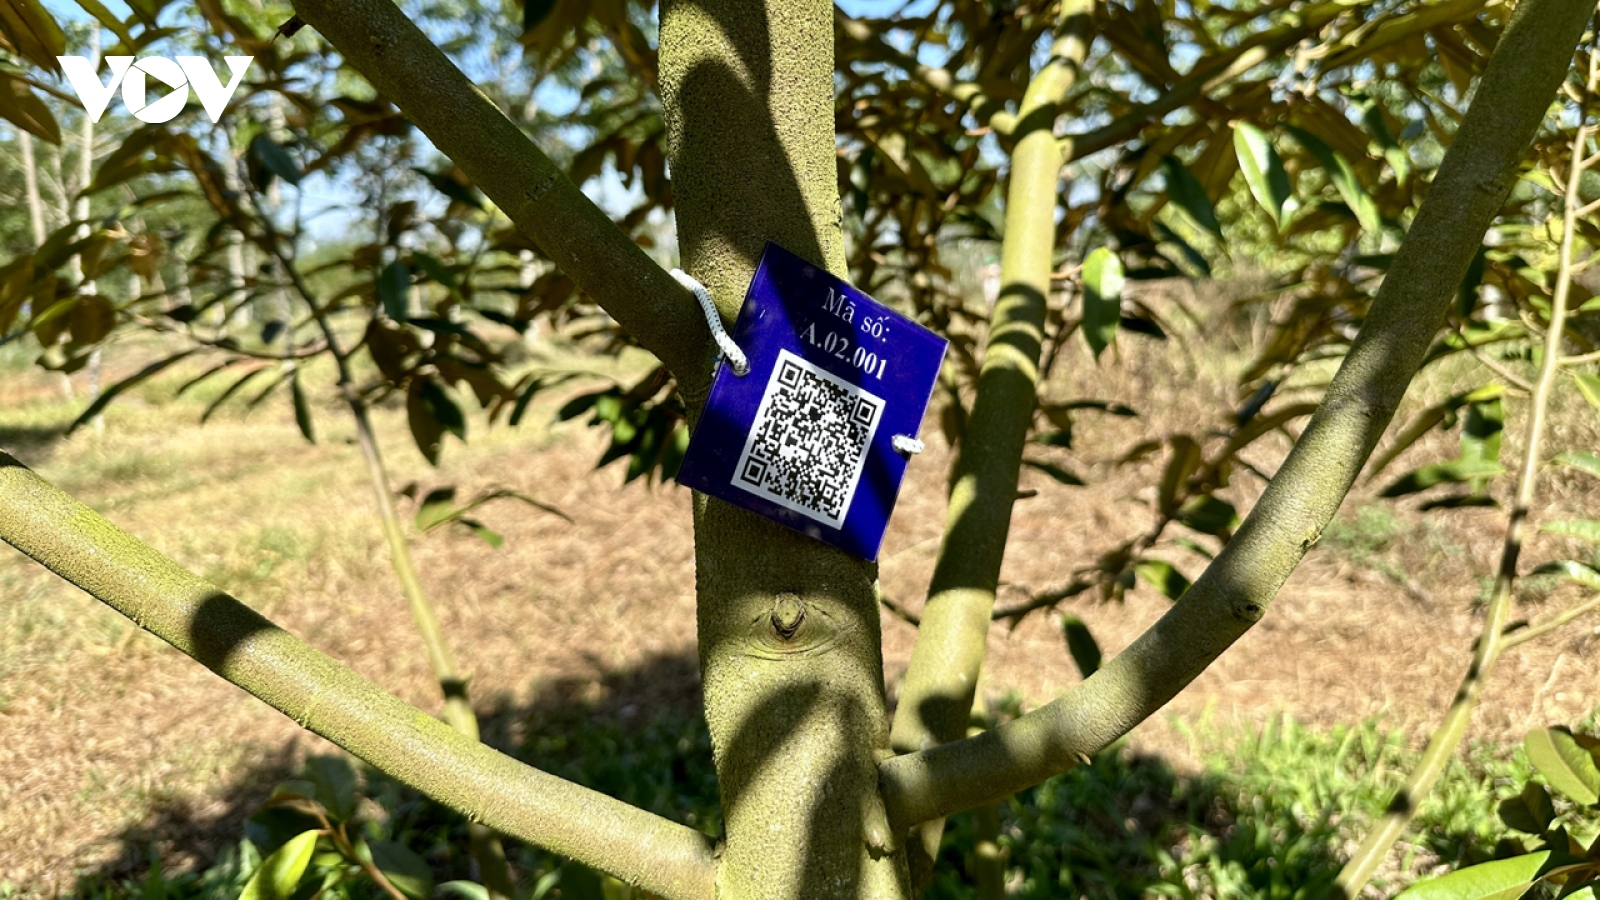 Gắn mã QR số hoá 10.000 cây sầu riêng Đắk Lắk lên bản đồ cây xanh